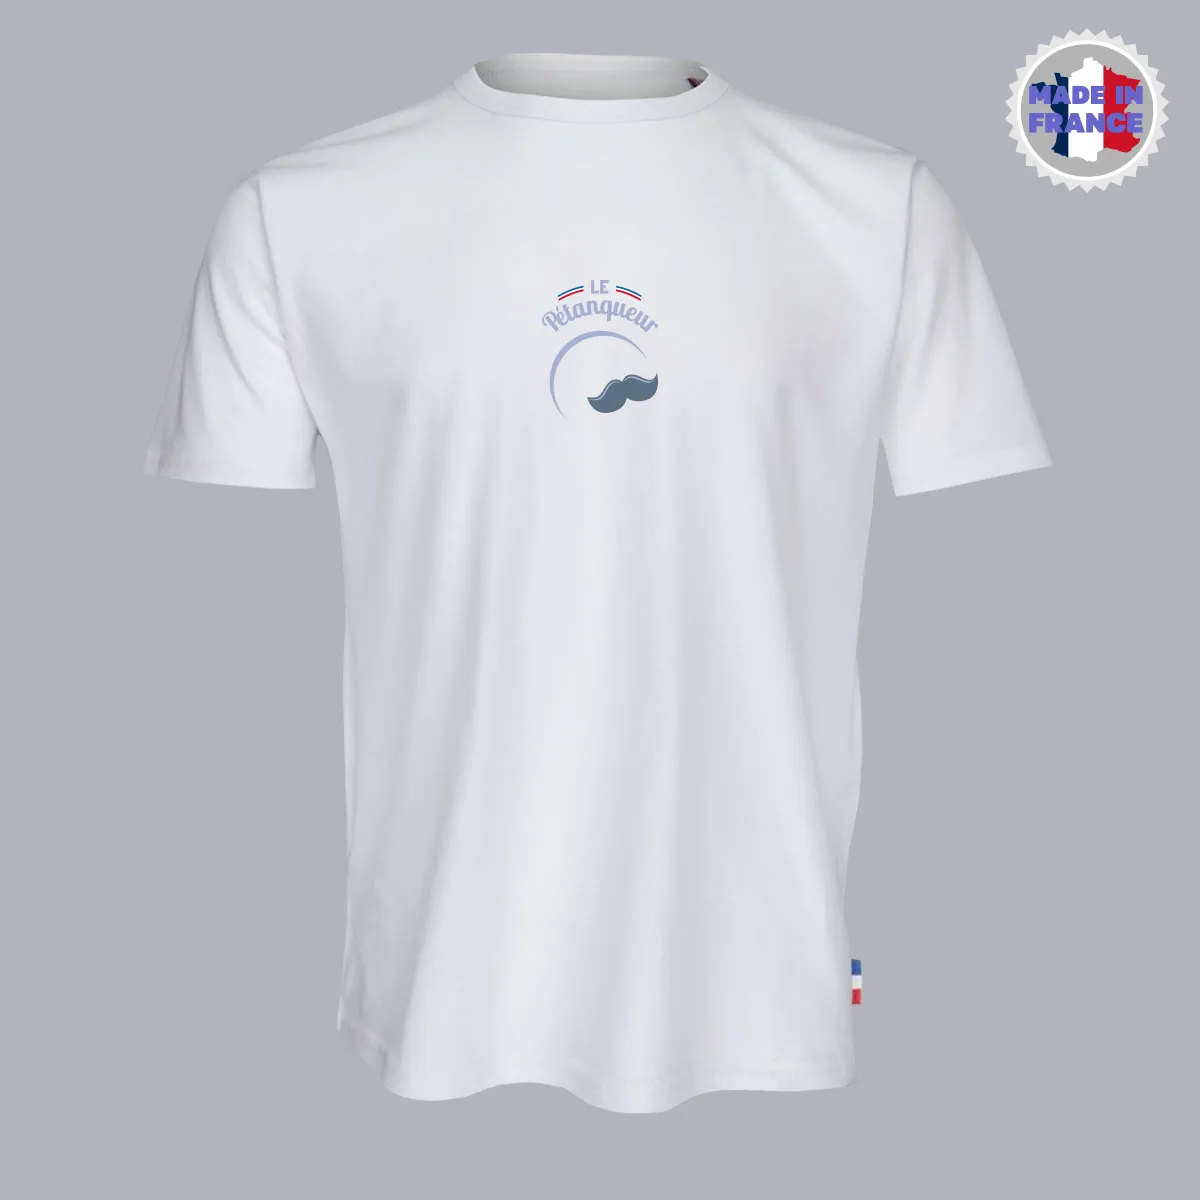 T-shirt 100% Français blanc avec motif de moustache sous l'inscription "Le Pétanqueur" et des bandes tricolores françaises.